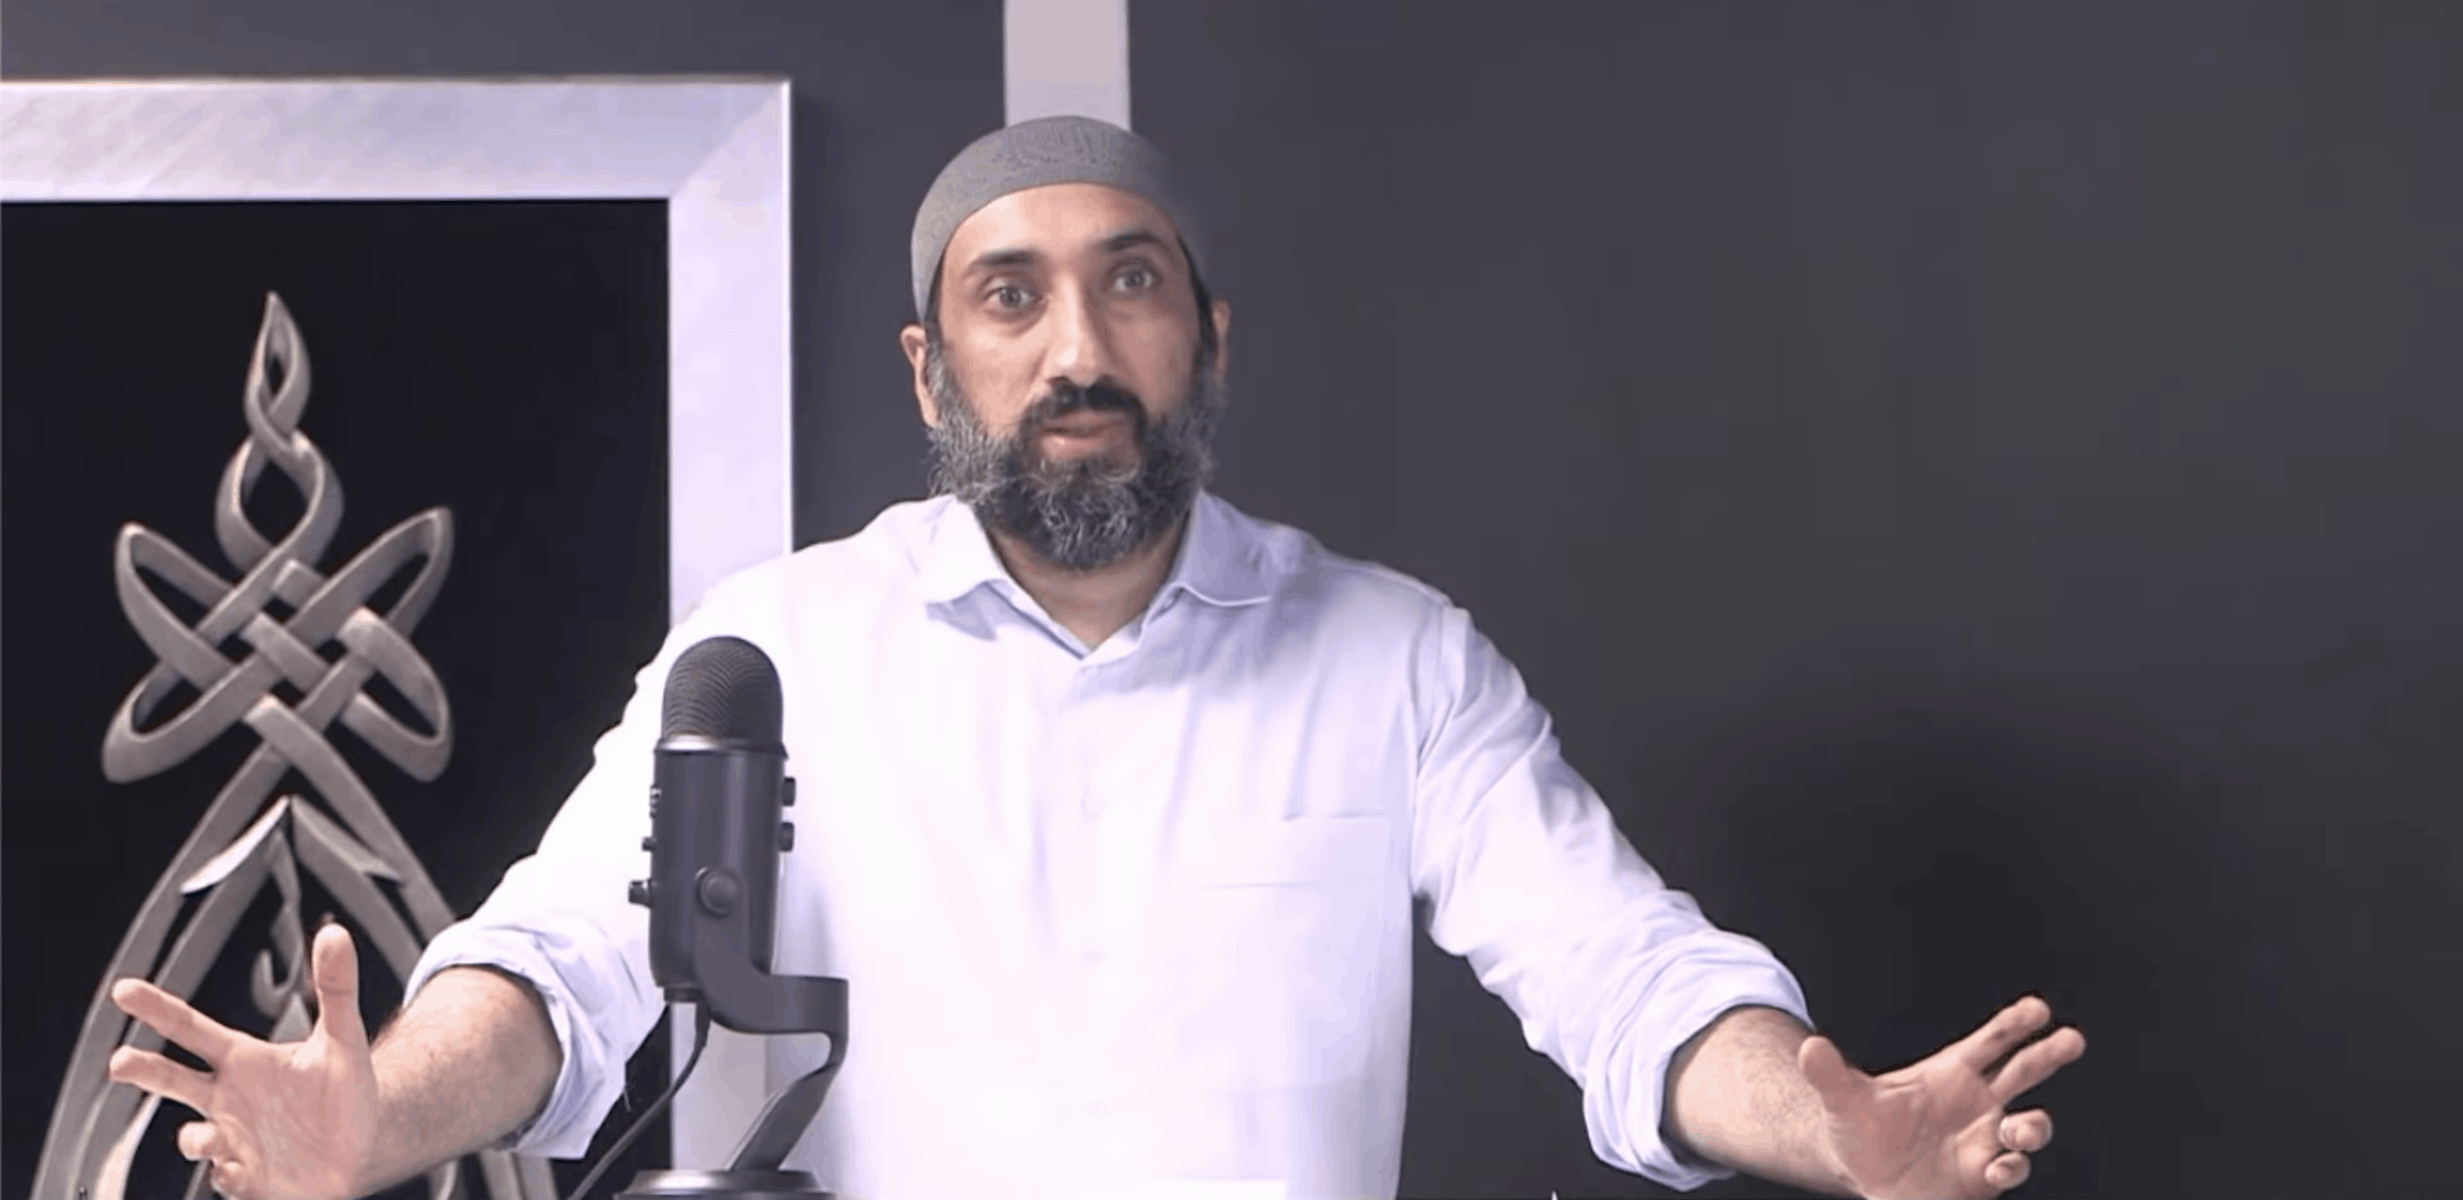 Free Antoine Suliman Porn Sex Hd - Nouman Ali Khan Lectures | Halal Tube